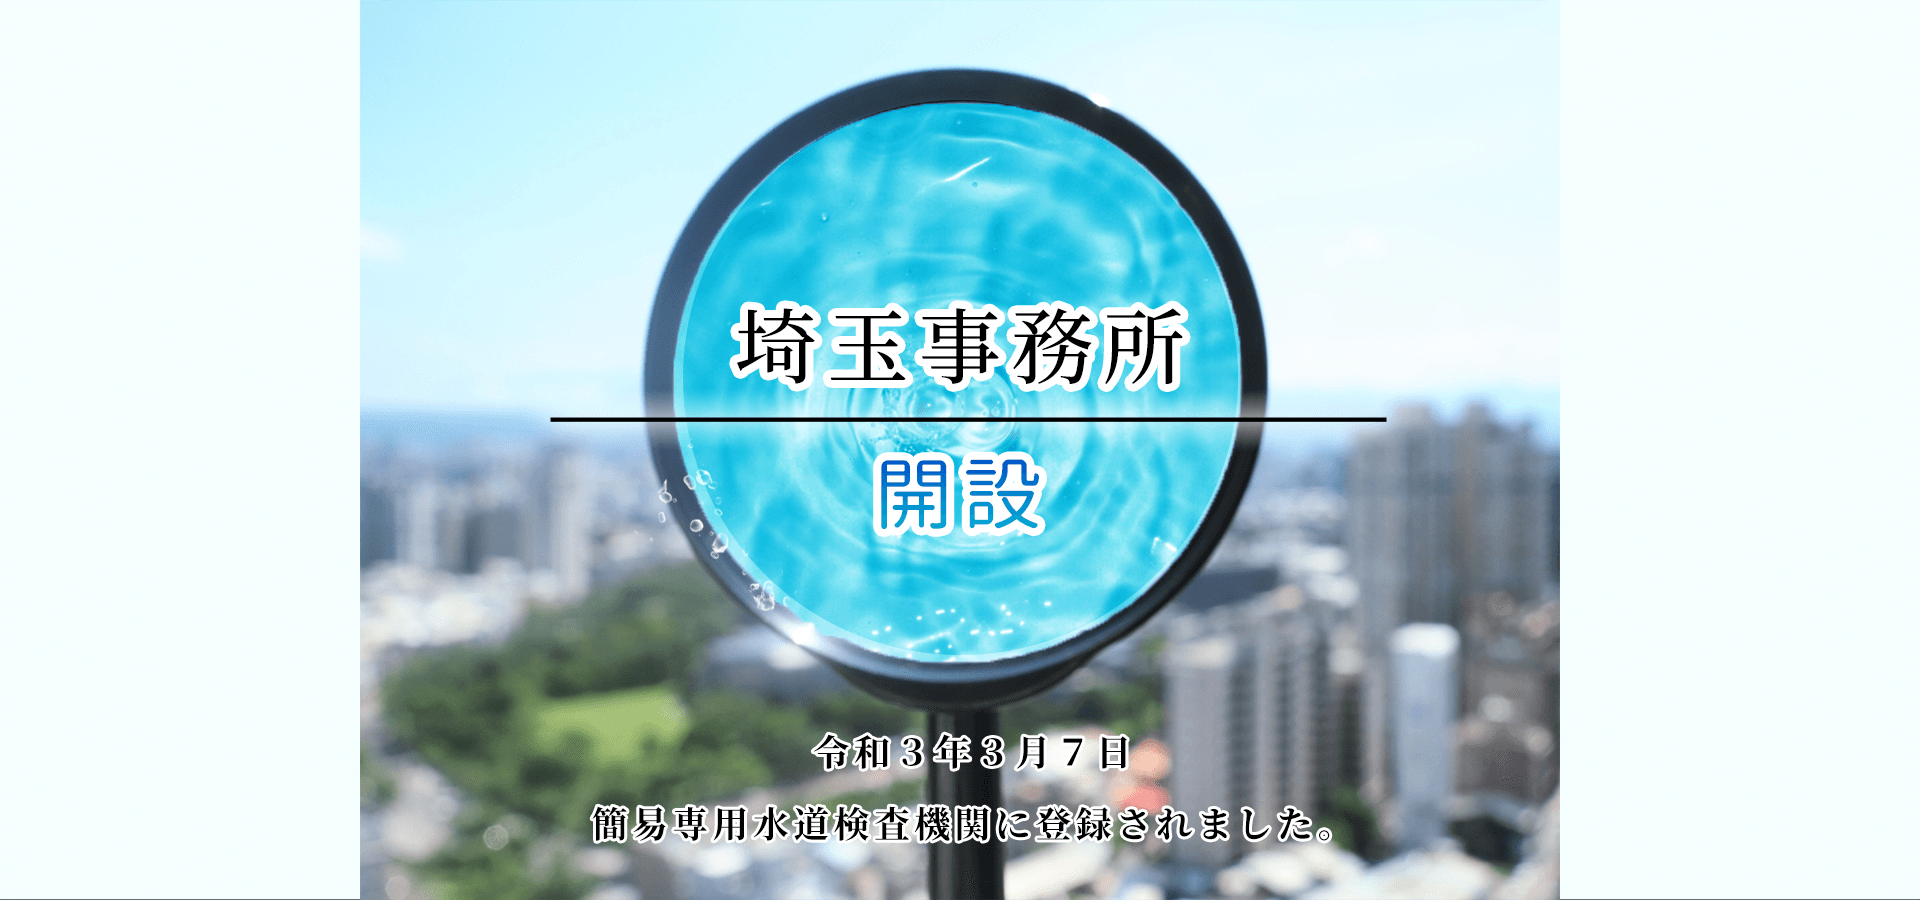 埼玉事務所を開設しました。令和３年３月７日に簡易専用水道検査機関に登録しました。